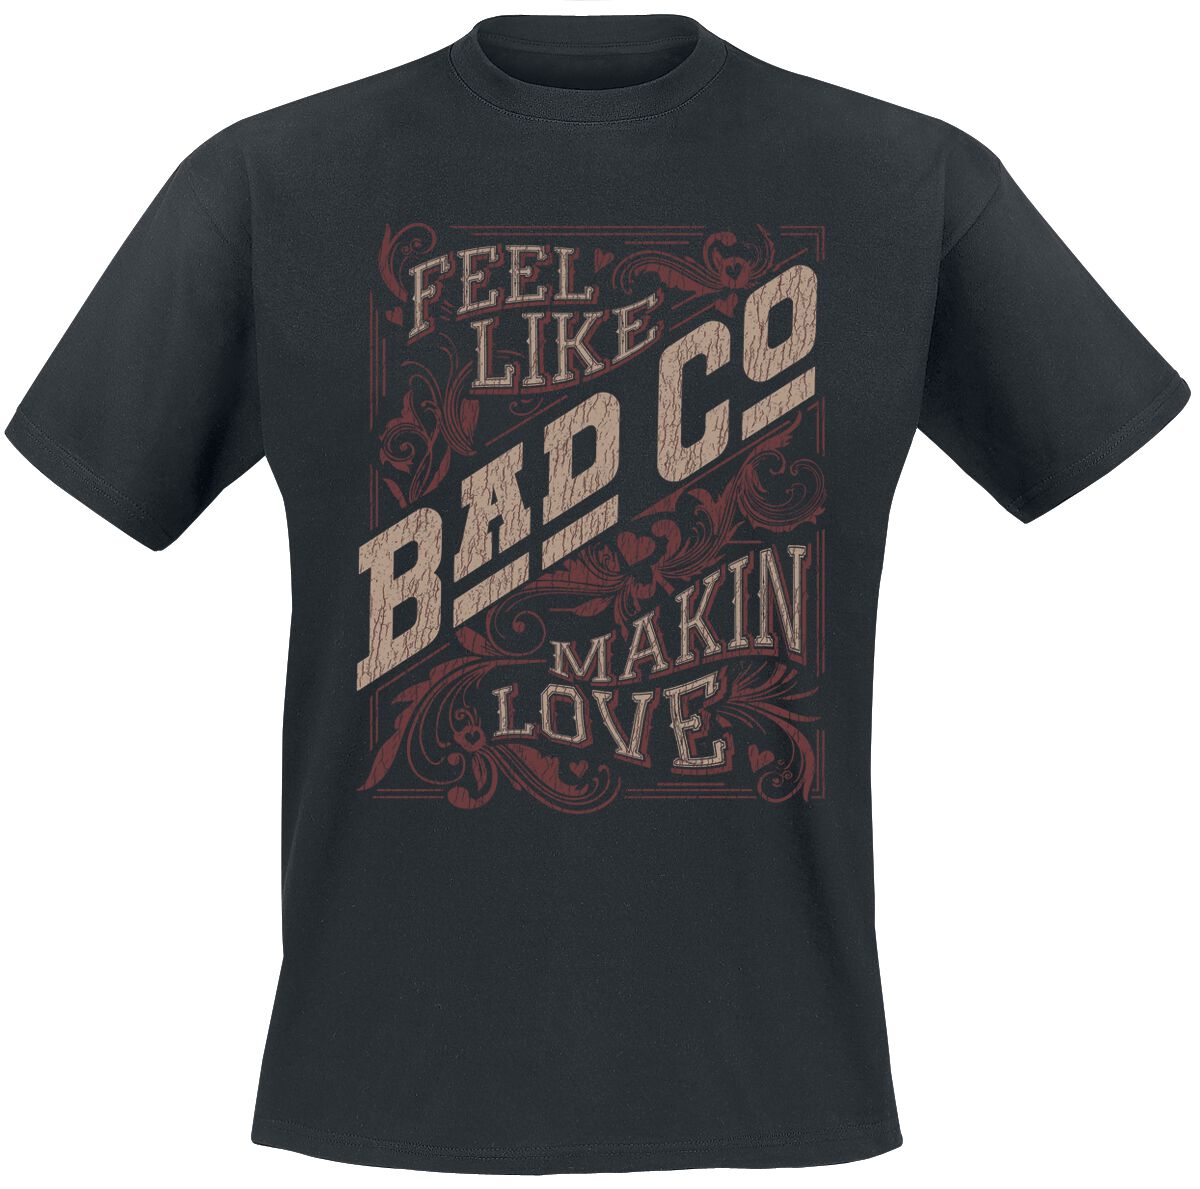 Bad Company T-Shirt - Makin Love - S bis XXL - für Männer - Größe M - schwarz  - EMP exklusives Merchandise!